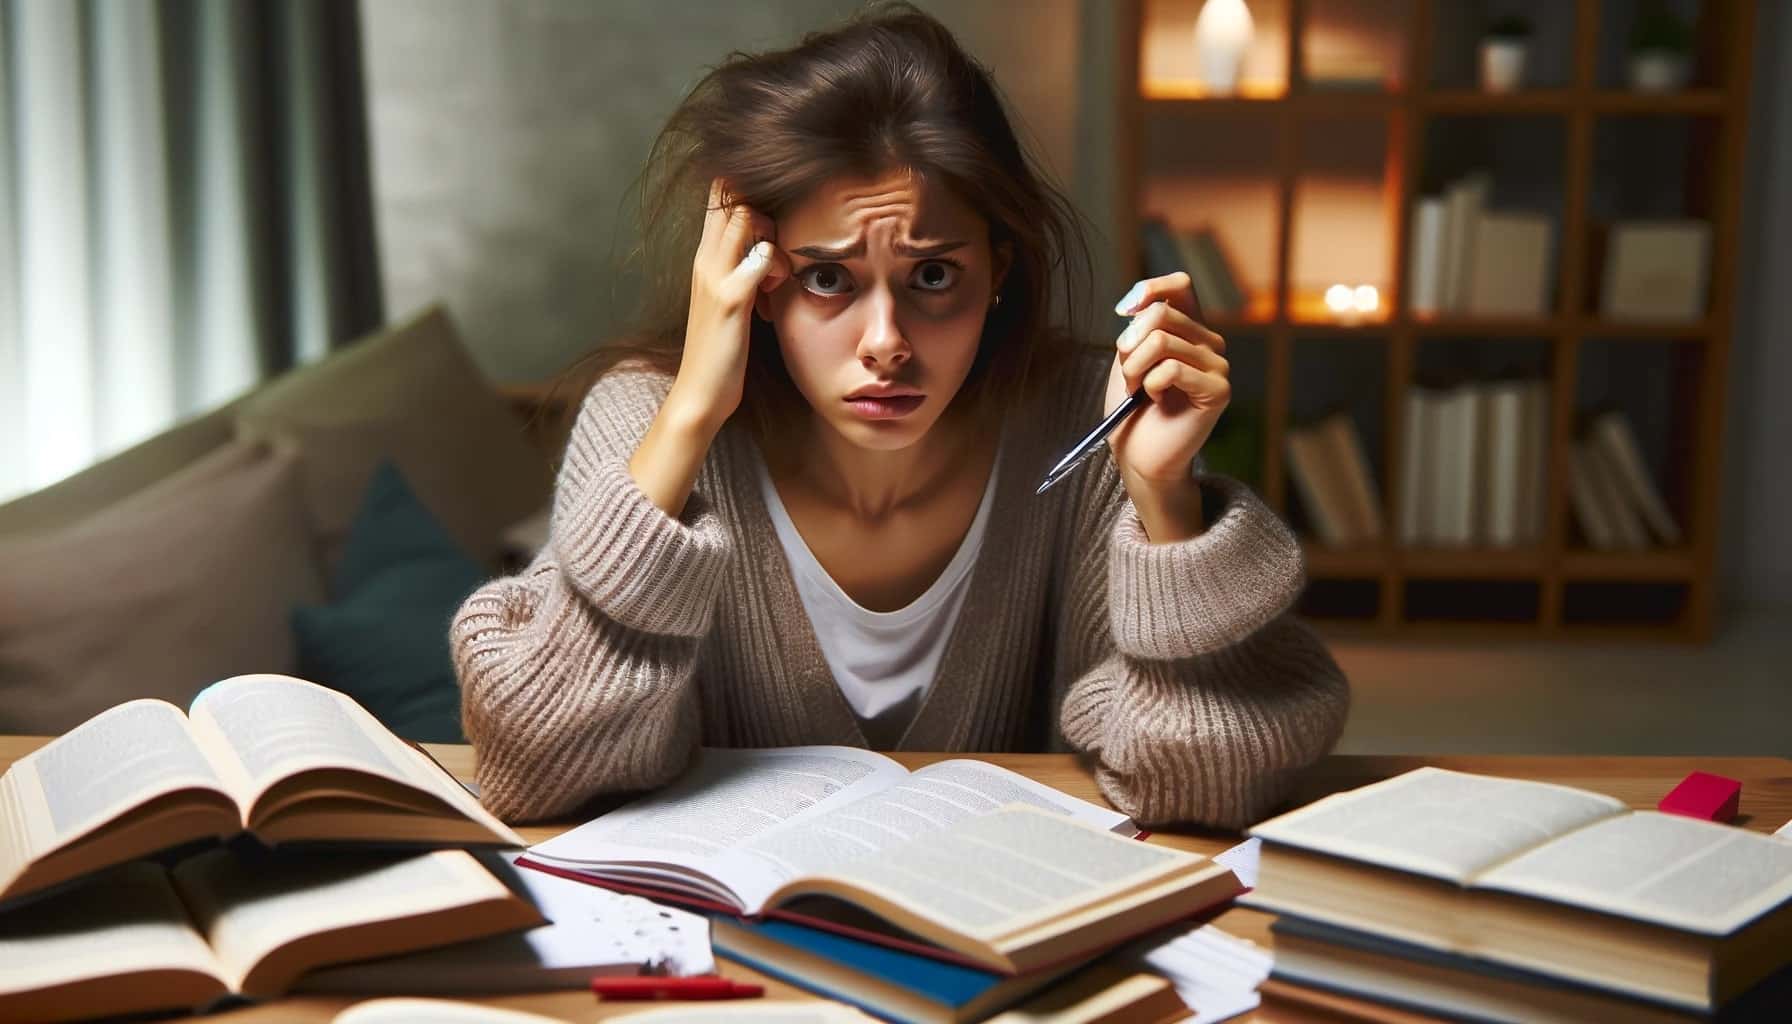 Una ragazza che studia soffre di ansia da esami universitari